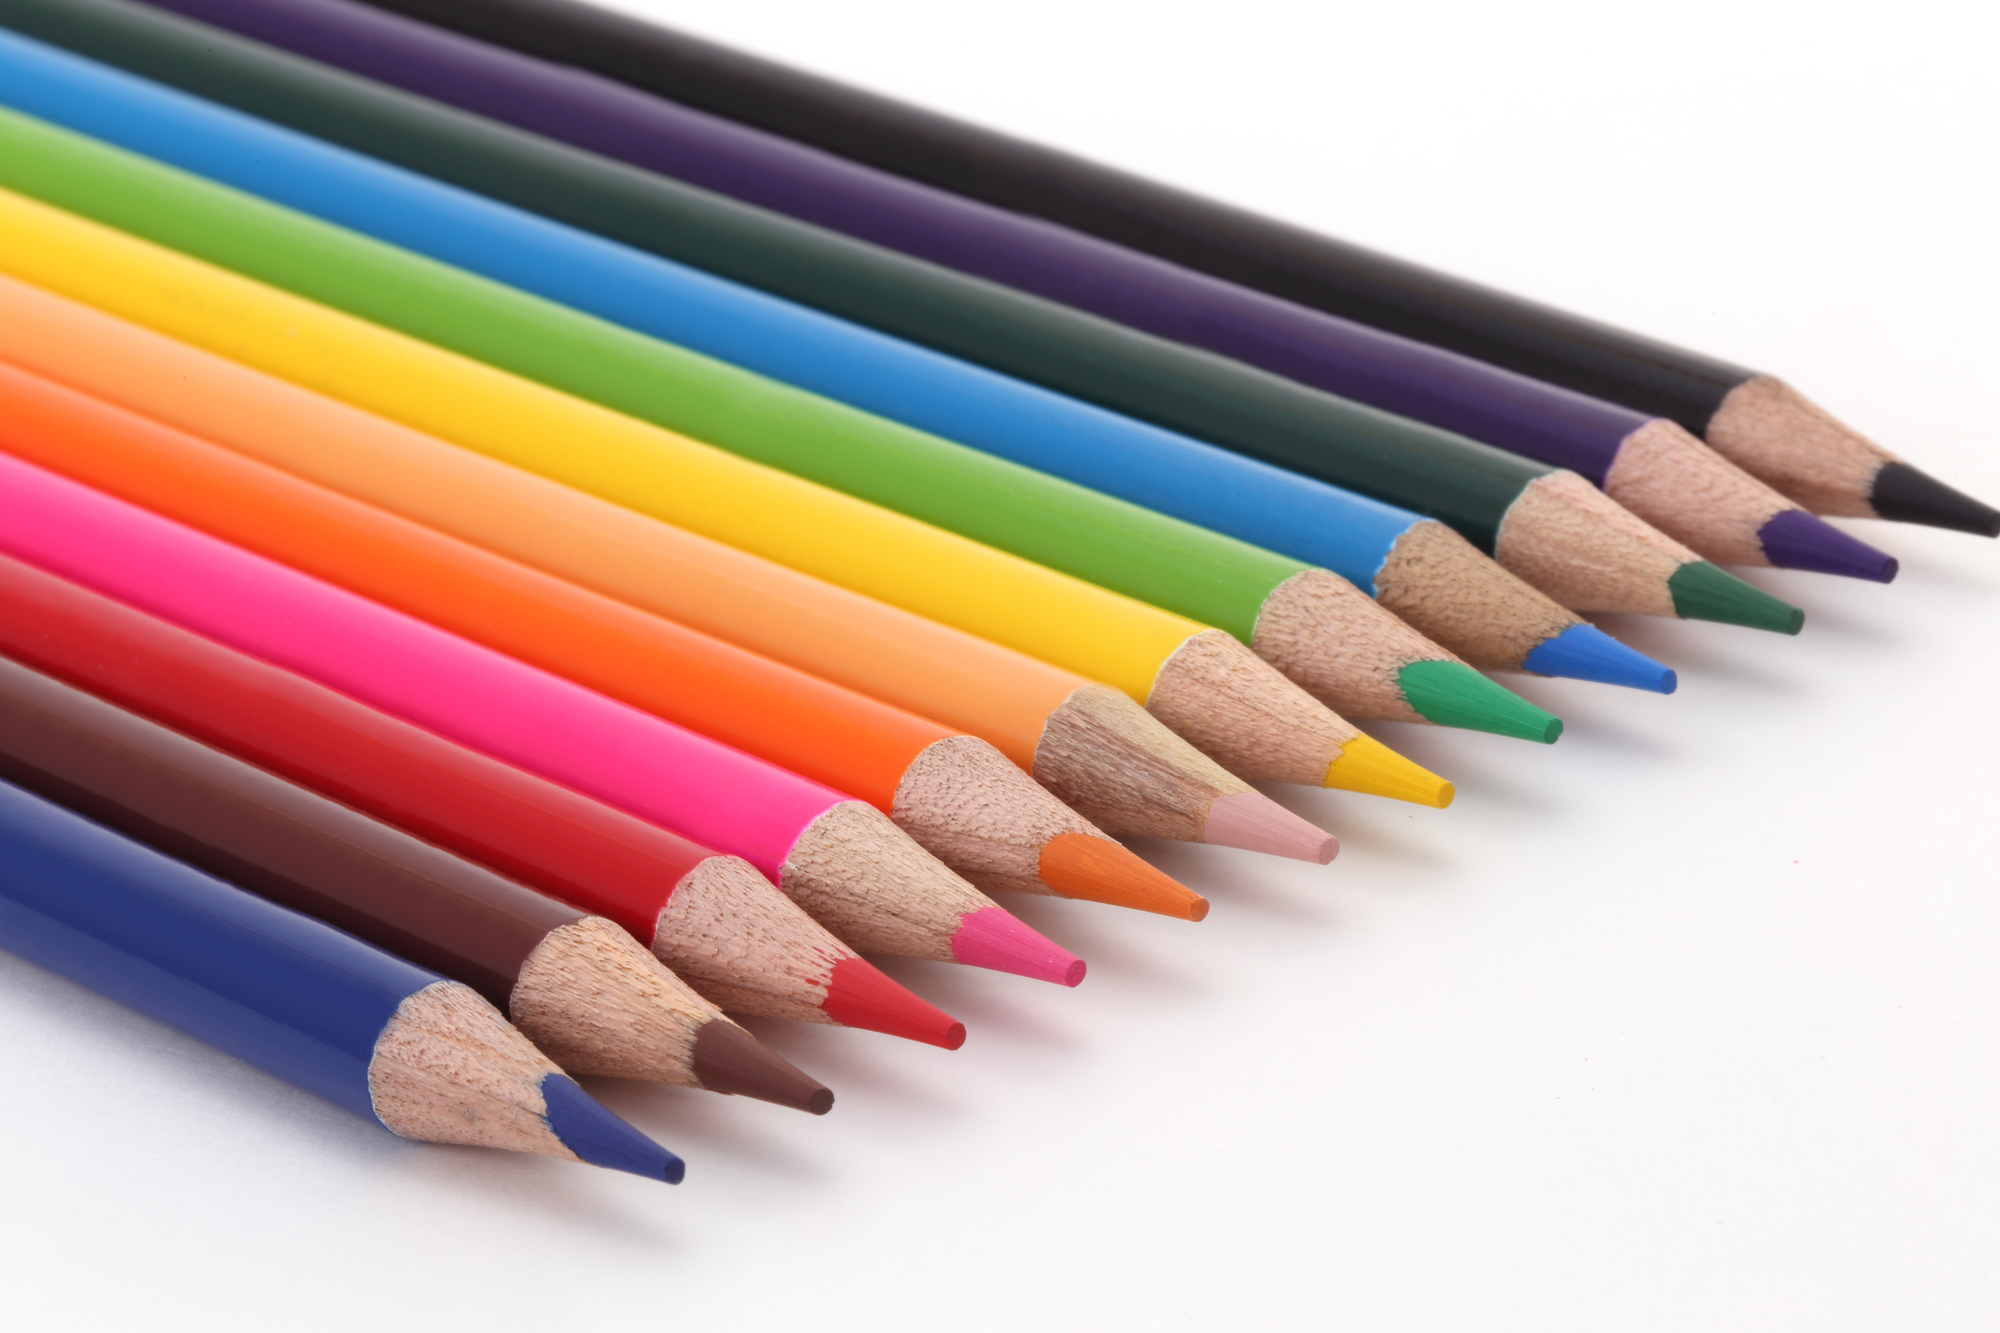 カラーセラピー 色の意味と効果をわかりやすく解説 リーダーのメモ帳